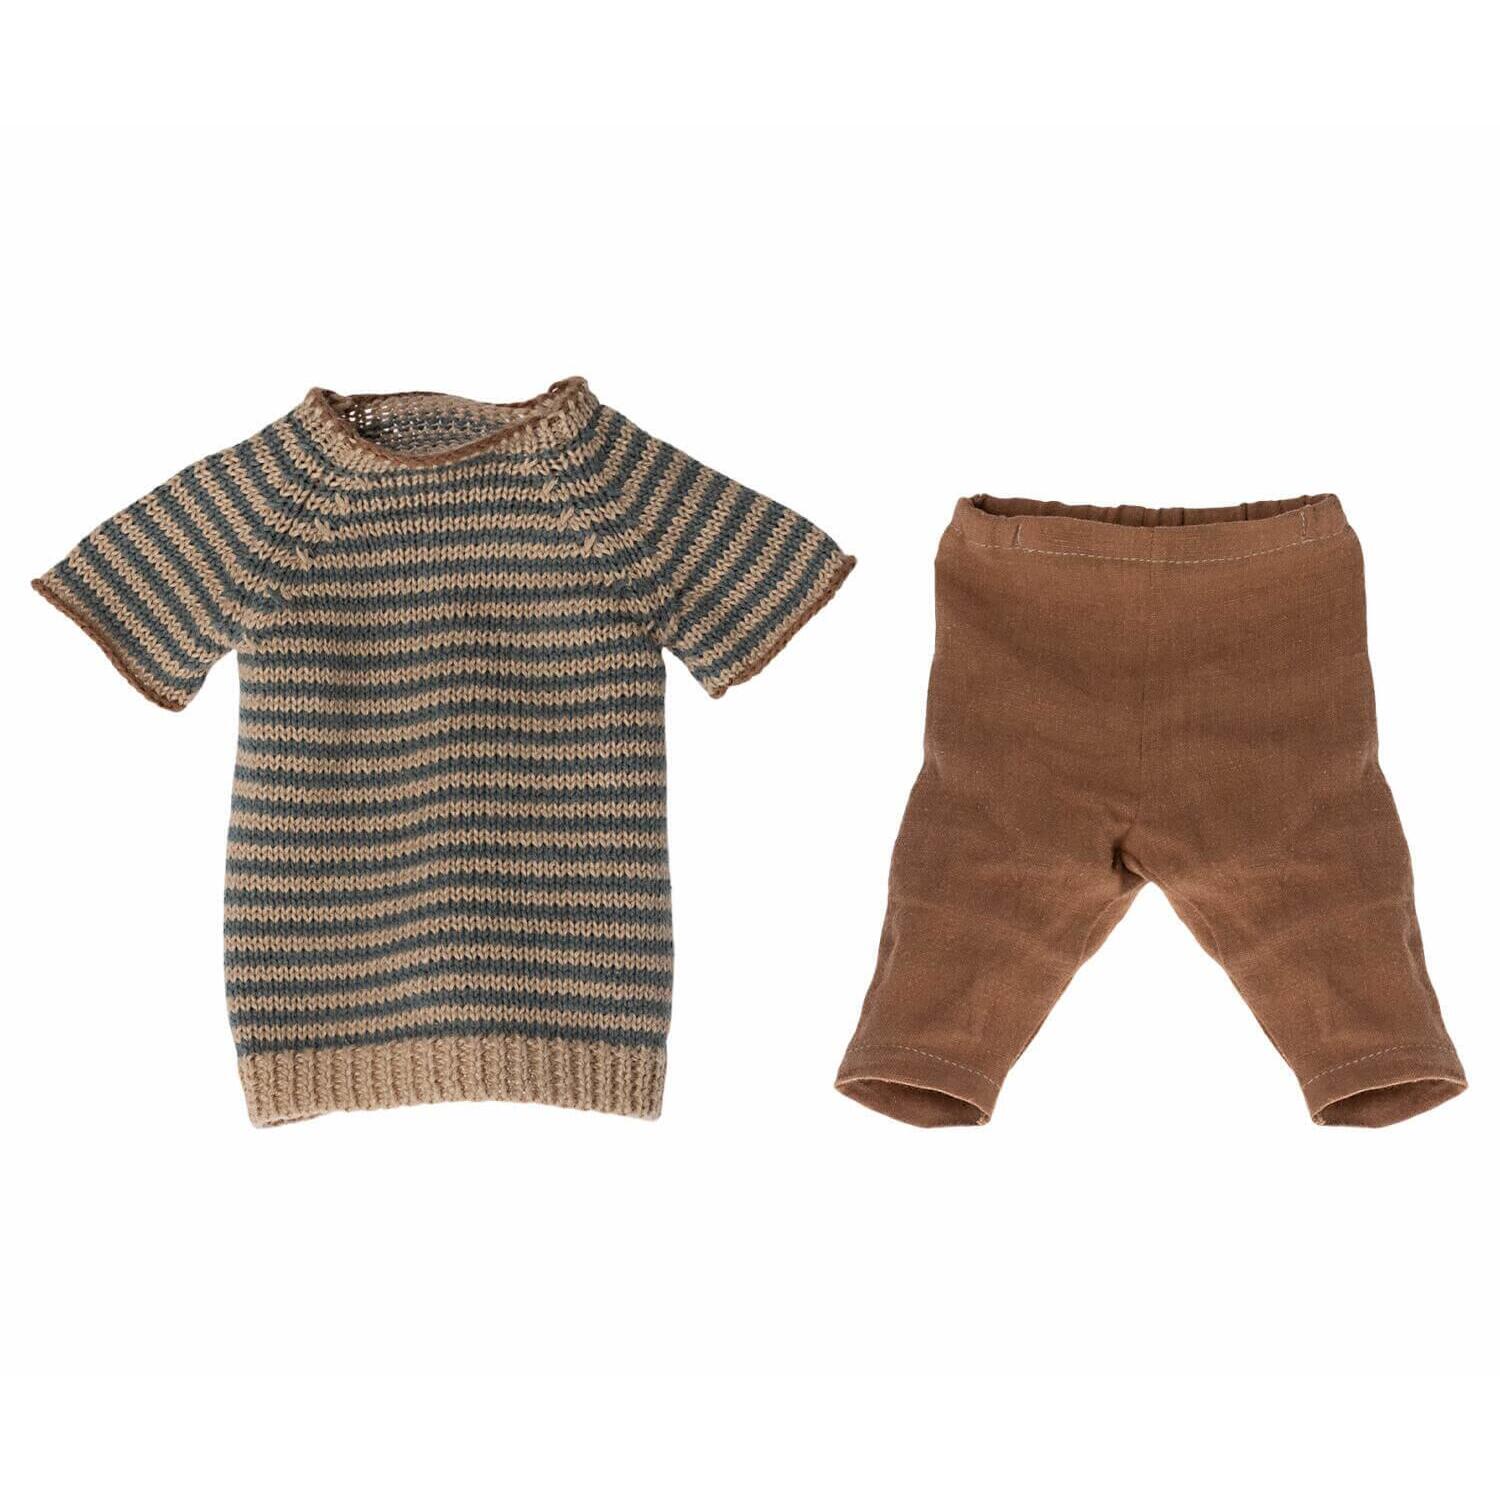 Maileg Kaninchen Größe 4, Klassisch - Strickhemd , Hase, Rabbit size 4, Classic - Knitted shirt and shorts